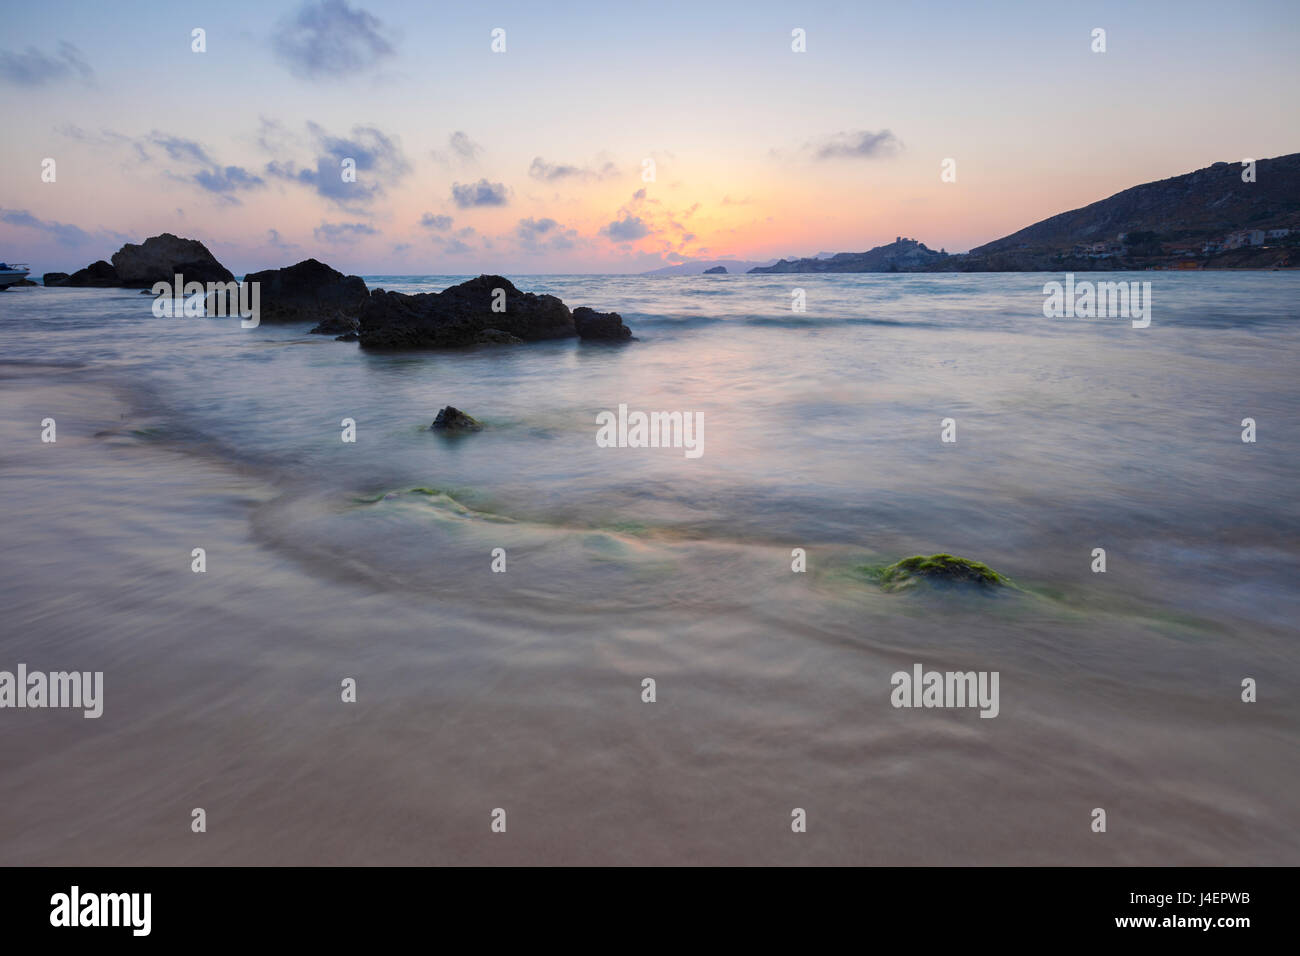 Le ultime luci del tramonto si riflettono sulle onde del mare e la spiaggia di sabbia, Licata, in provincia di Agrigento, Sicilia, Italia Foto Stock